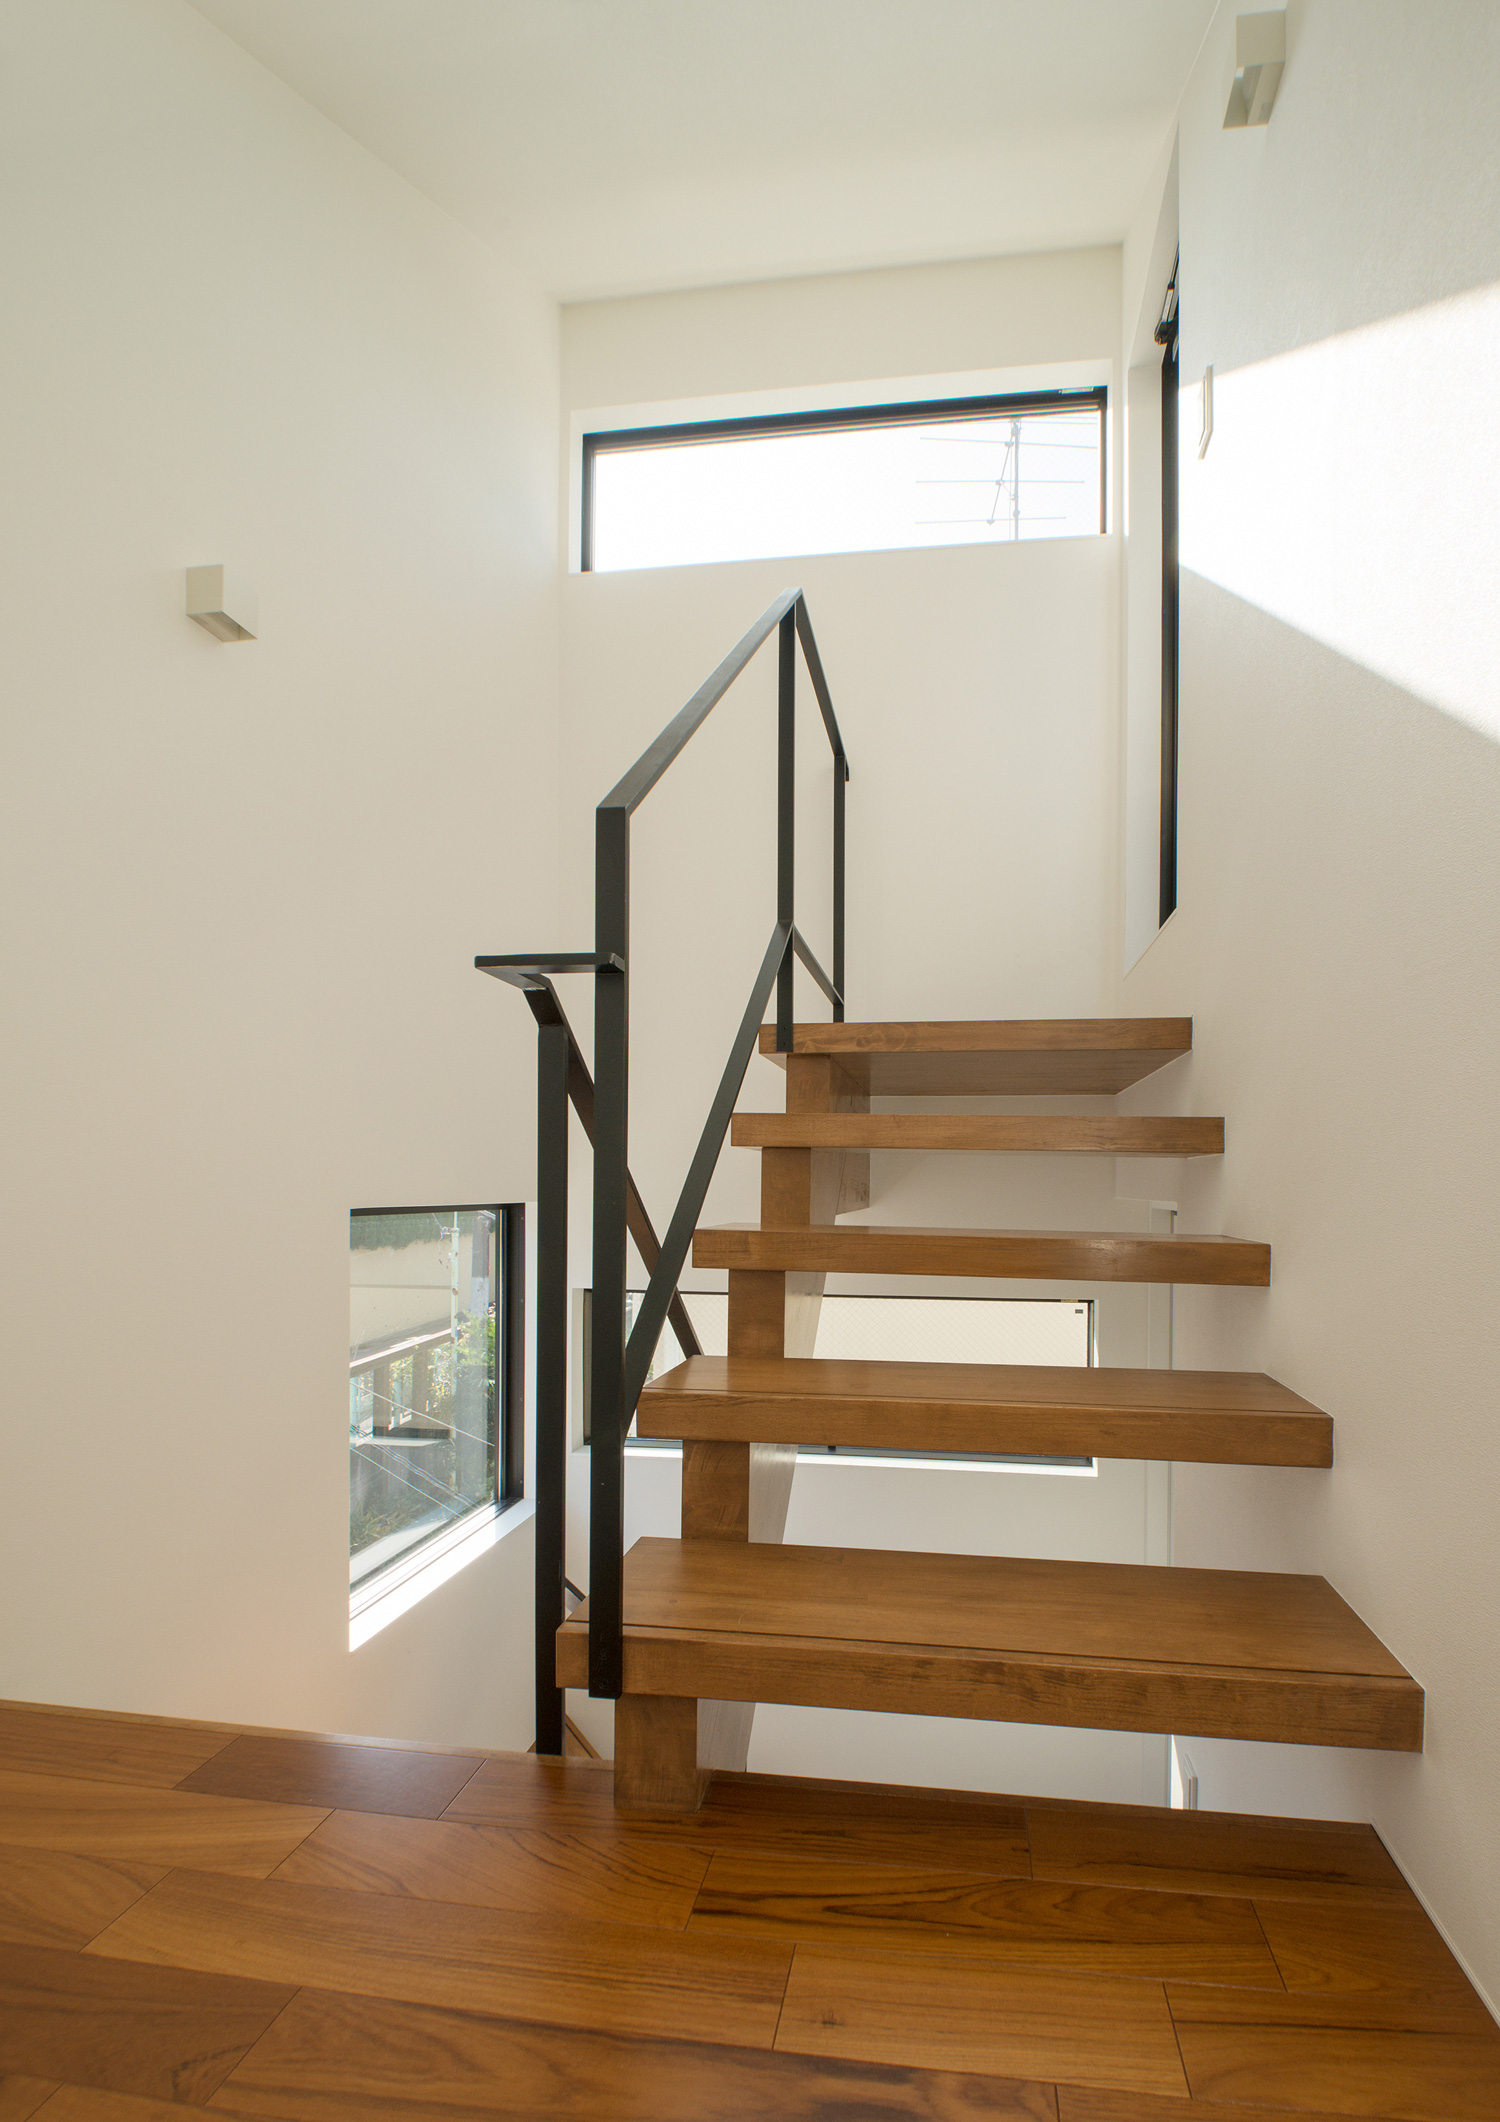 スリット窓から光が入る木のスケルトン階段の階段室・デザイン住宅